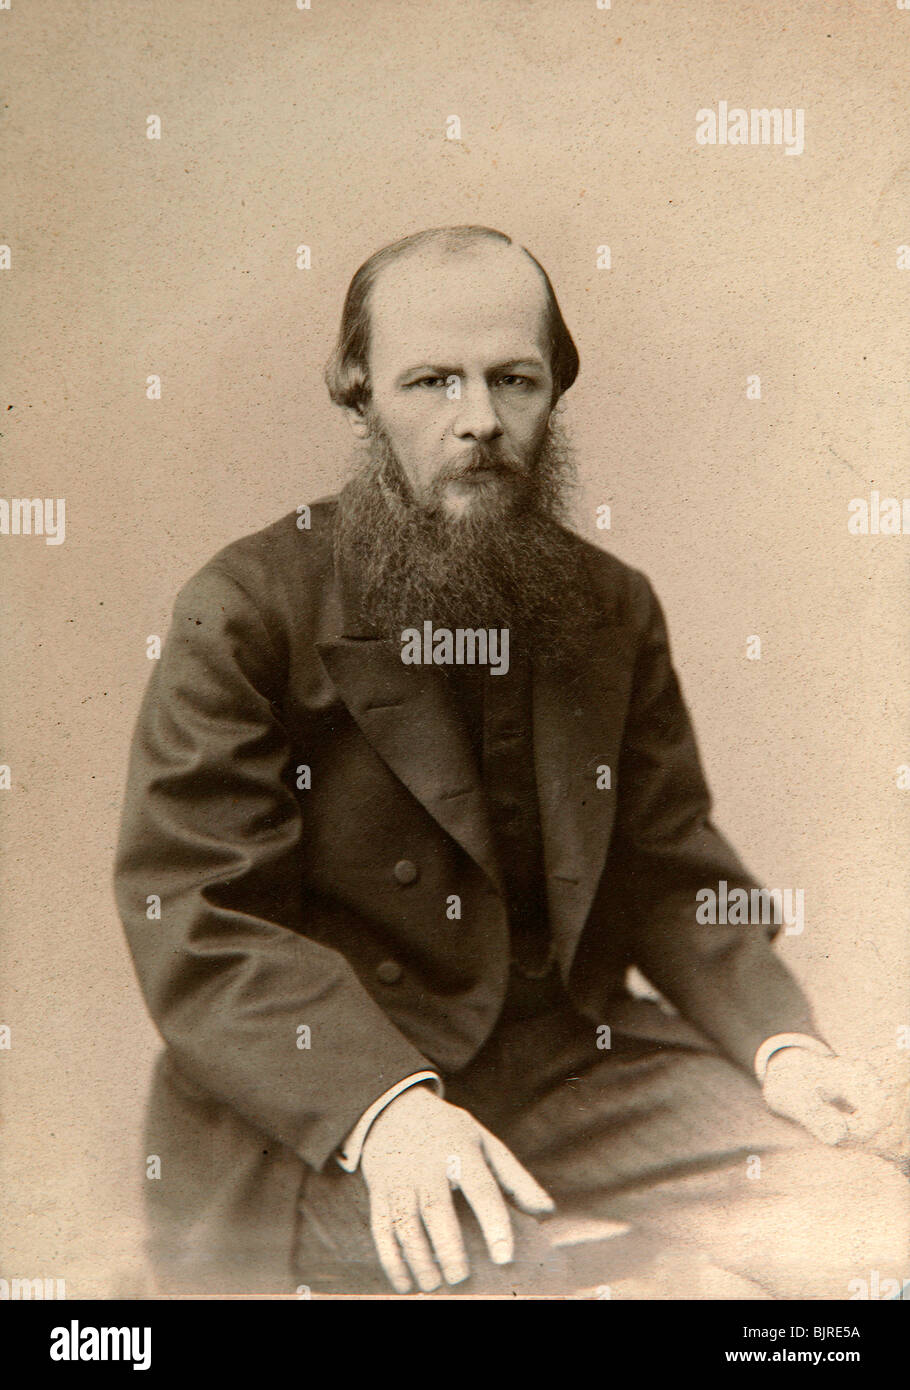 Fëdor Dostoevskij, romanziere russo c1860-c1881. Artista: Lauffert Foto Stock